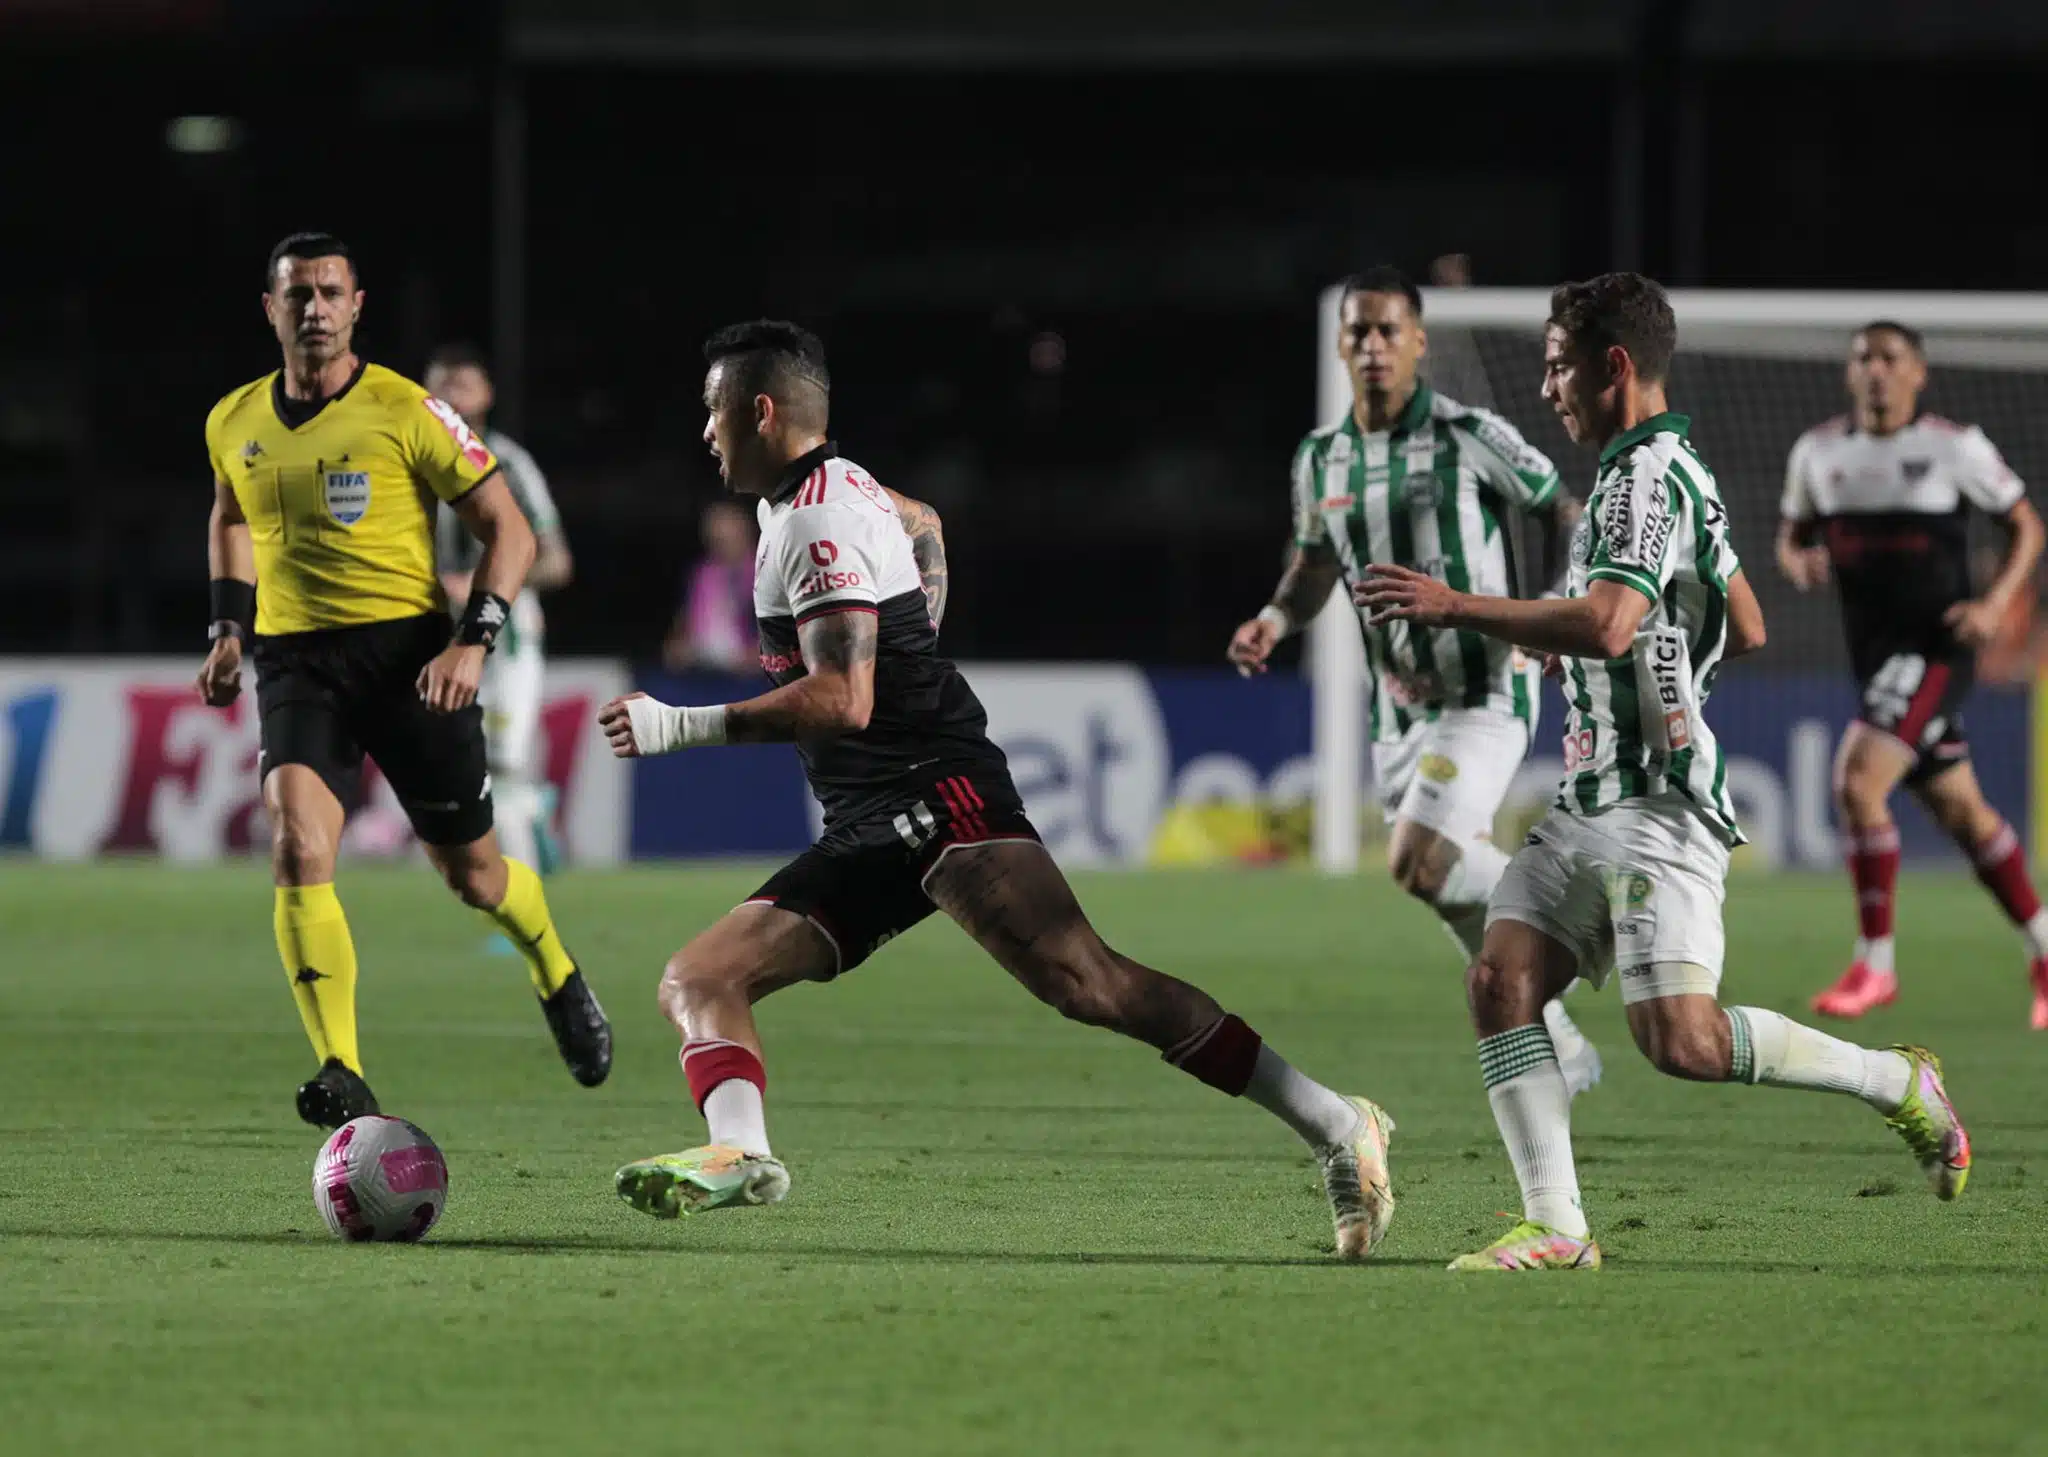 São Paulo negocia disputa de amistoso antes do início do Brasileirão com time da série A